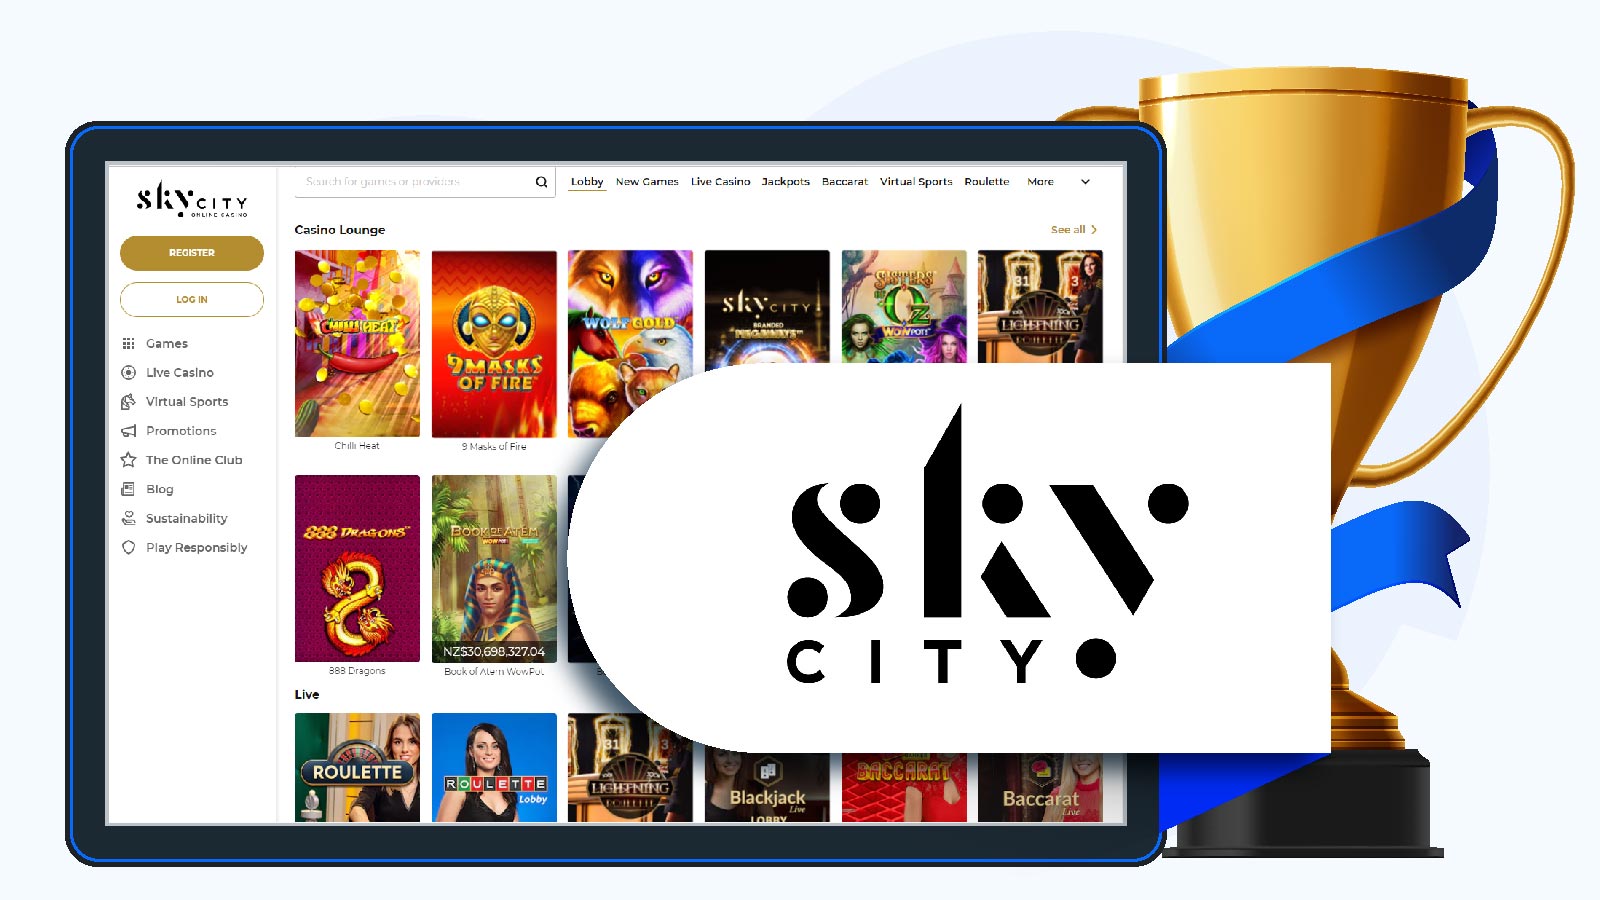 SkyCity Online Casino - The best $10 deposit casino in New Zealand